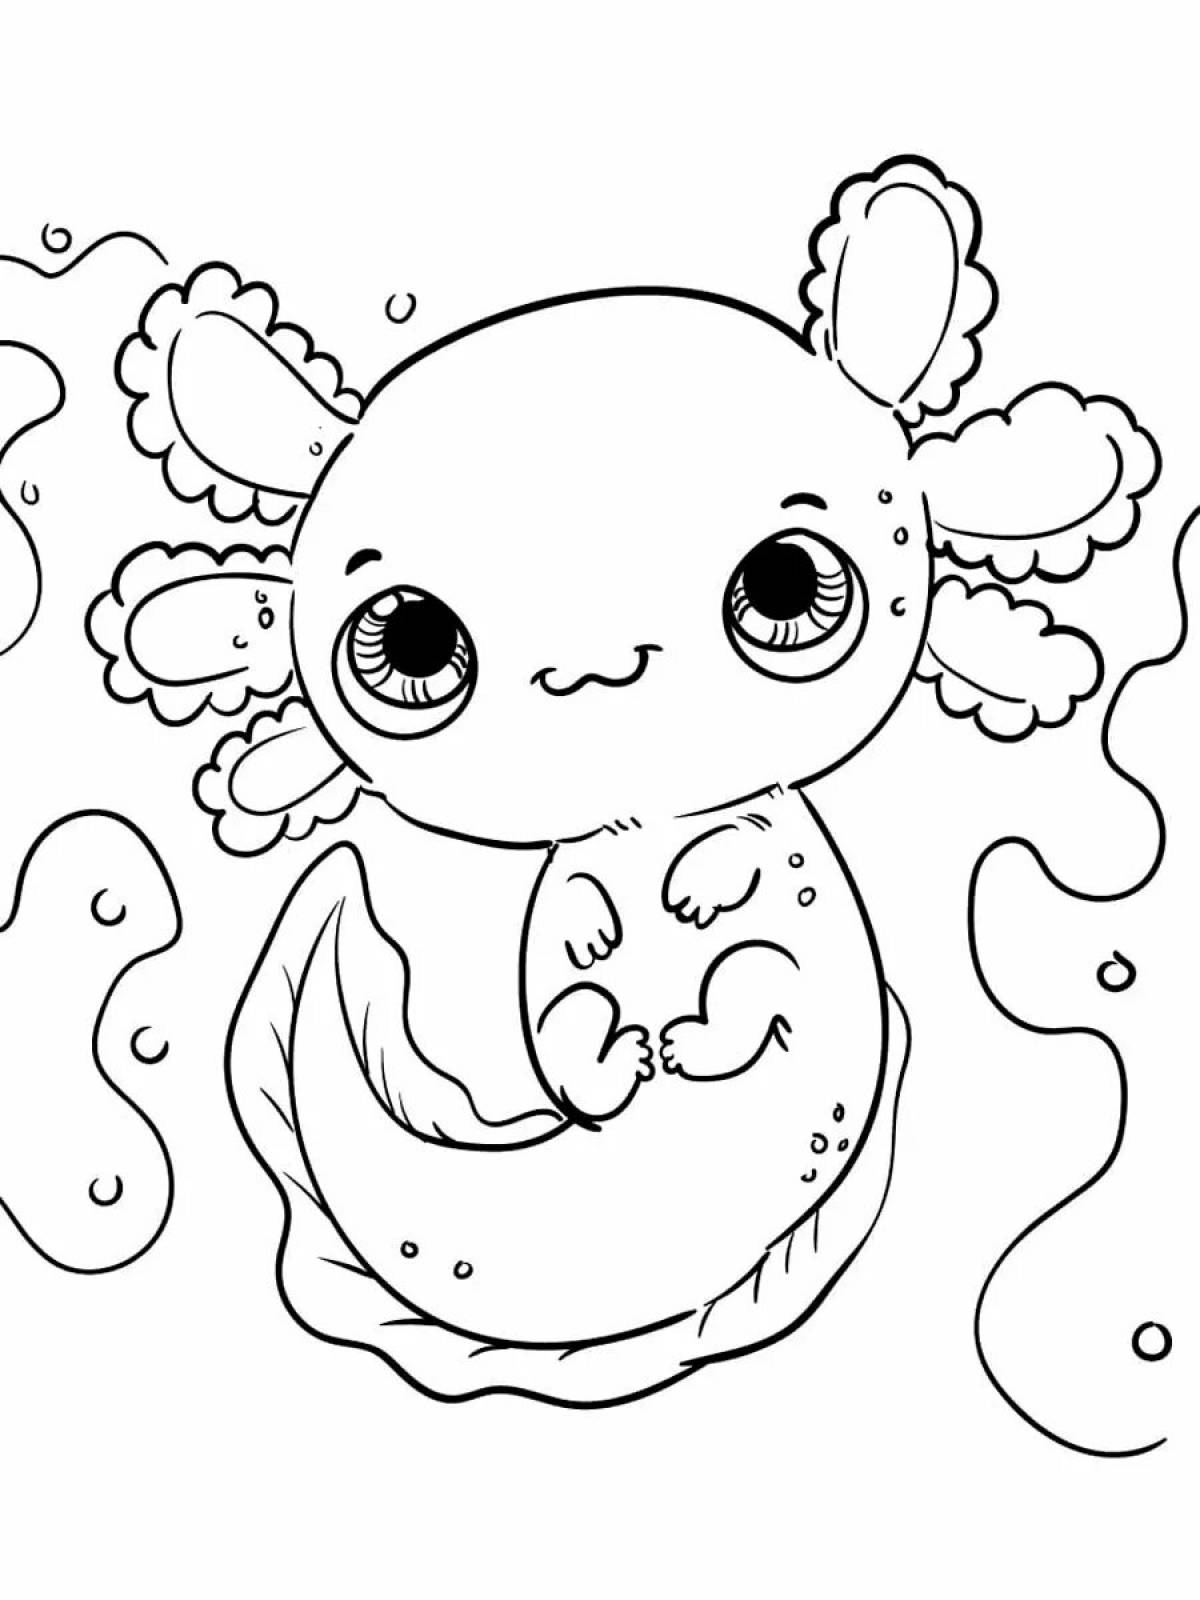 Axolotl for kids #18